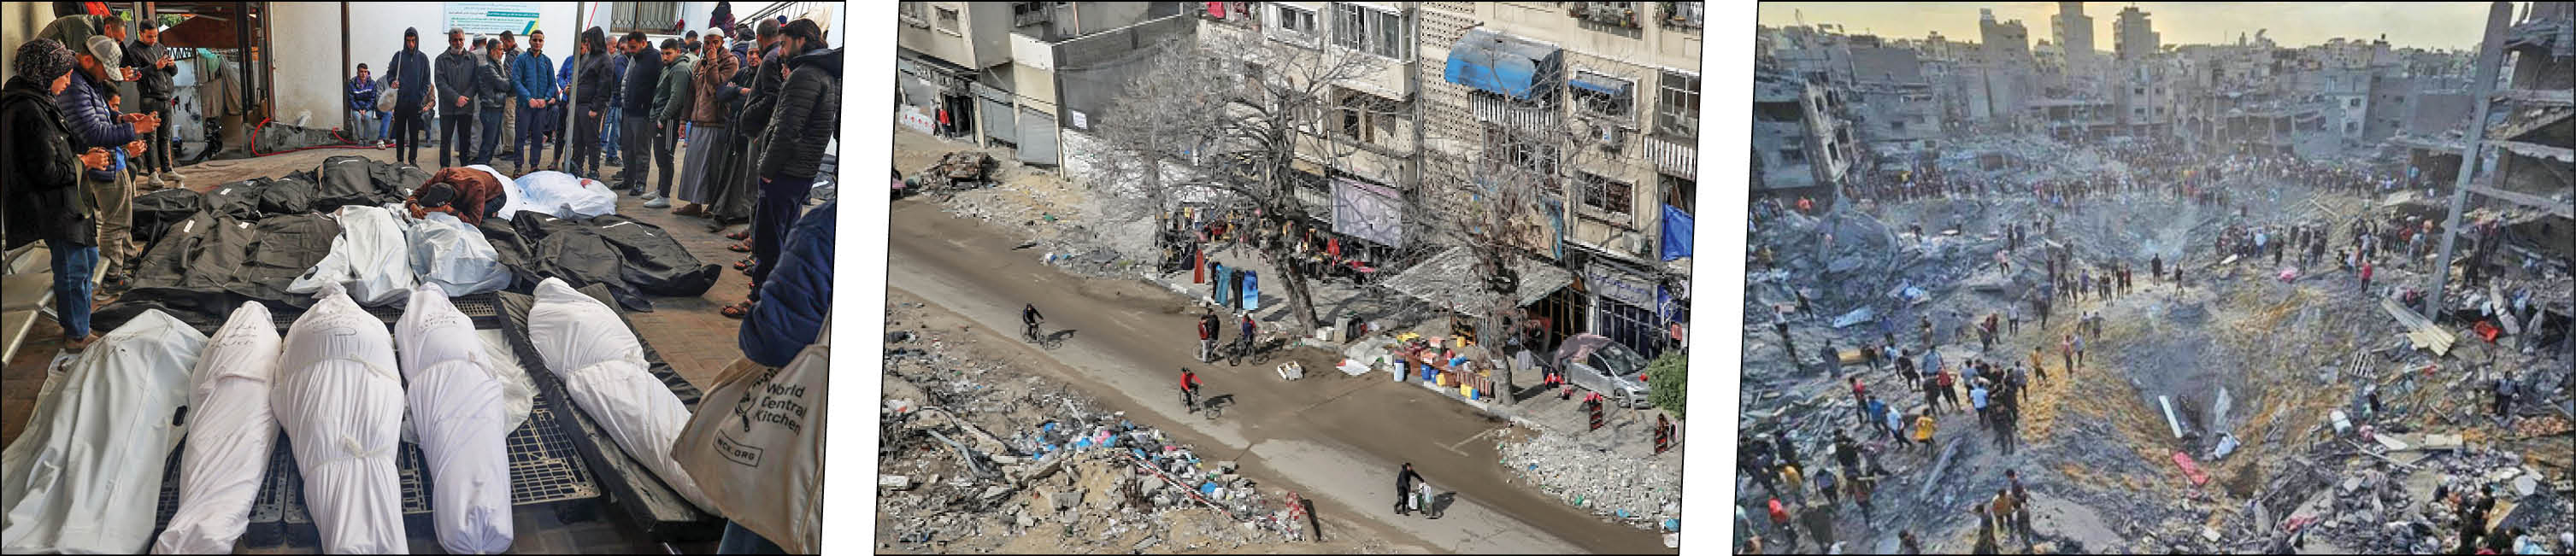 جنایت رژیم صهیونیستی در خیابان الرشید؛ ۱۰۴ شهید و ۷۶۰ مجروح